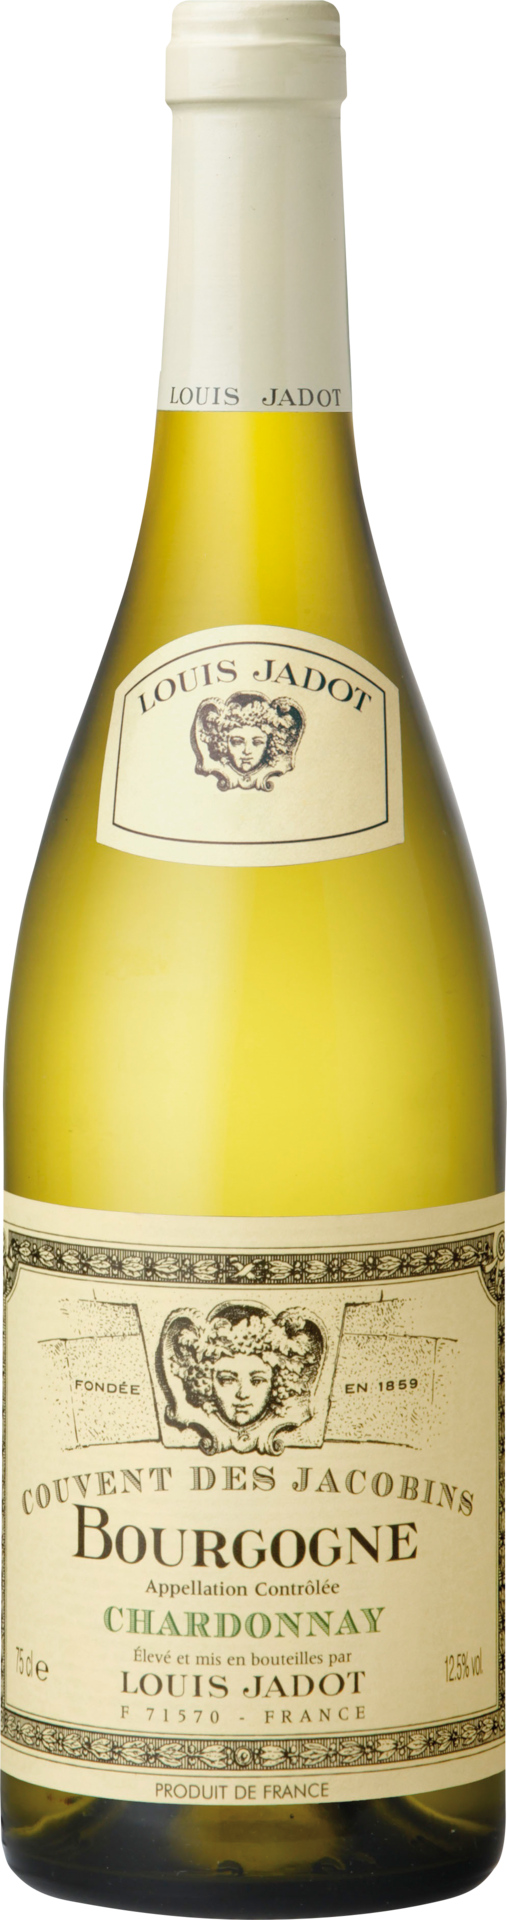 Bourgogne Blanc Chardonnay Couvent des Jacobins Maison Louis Jadot